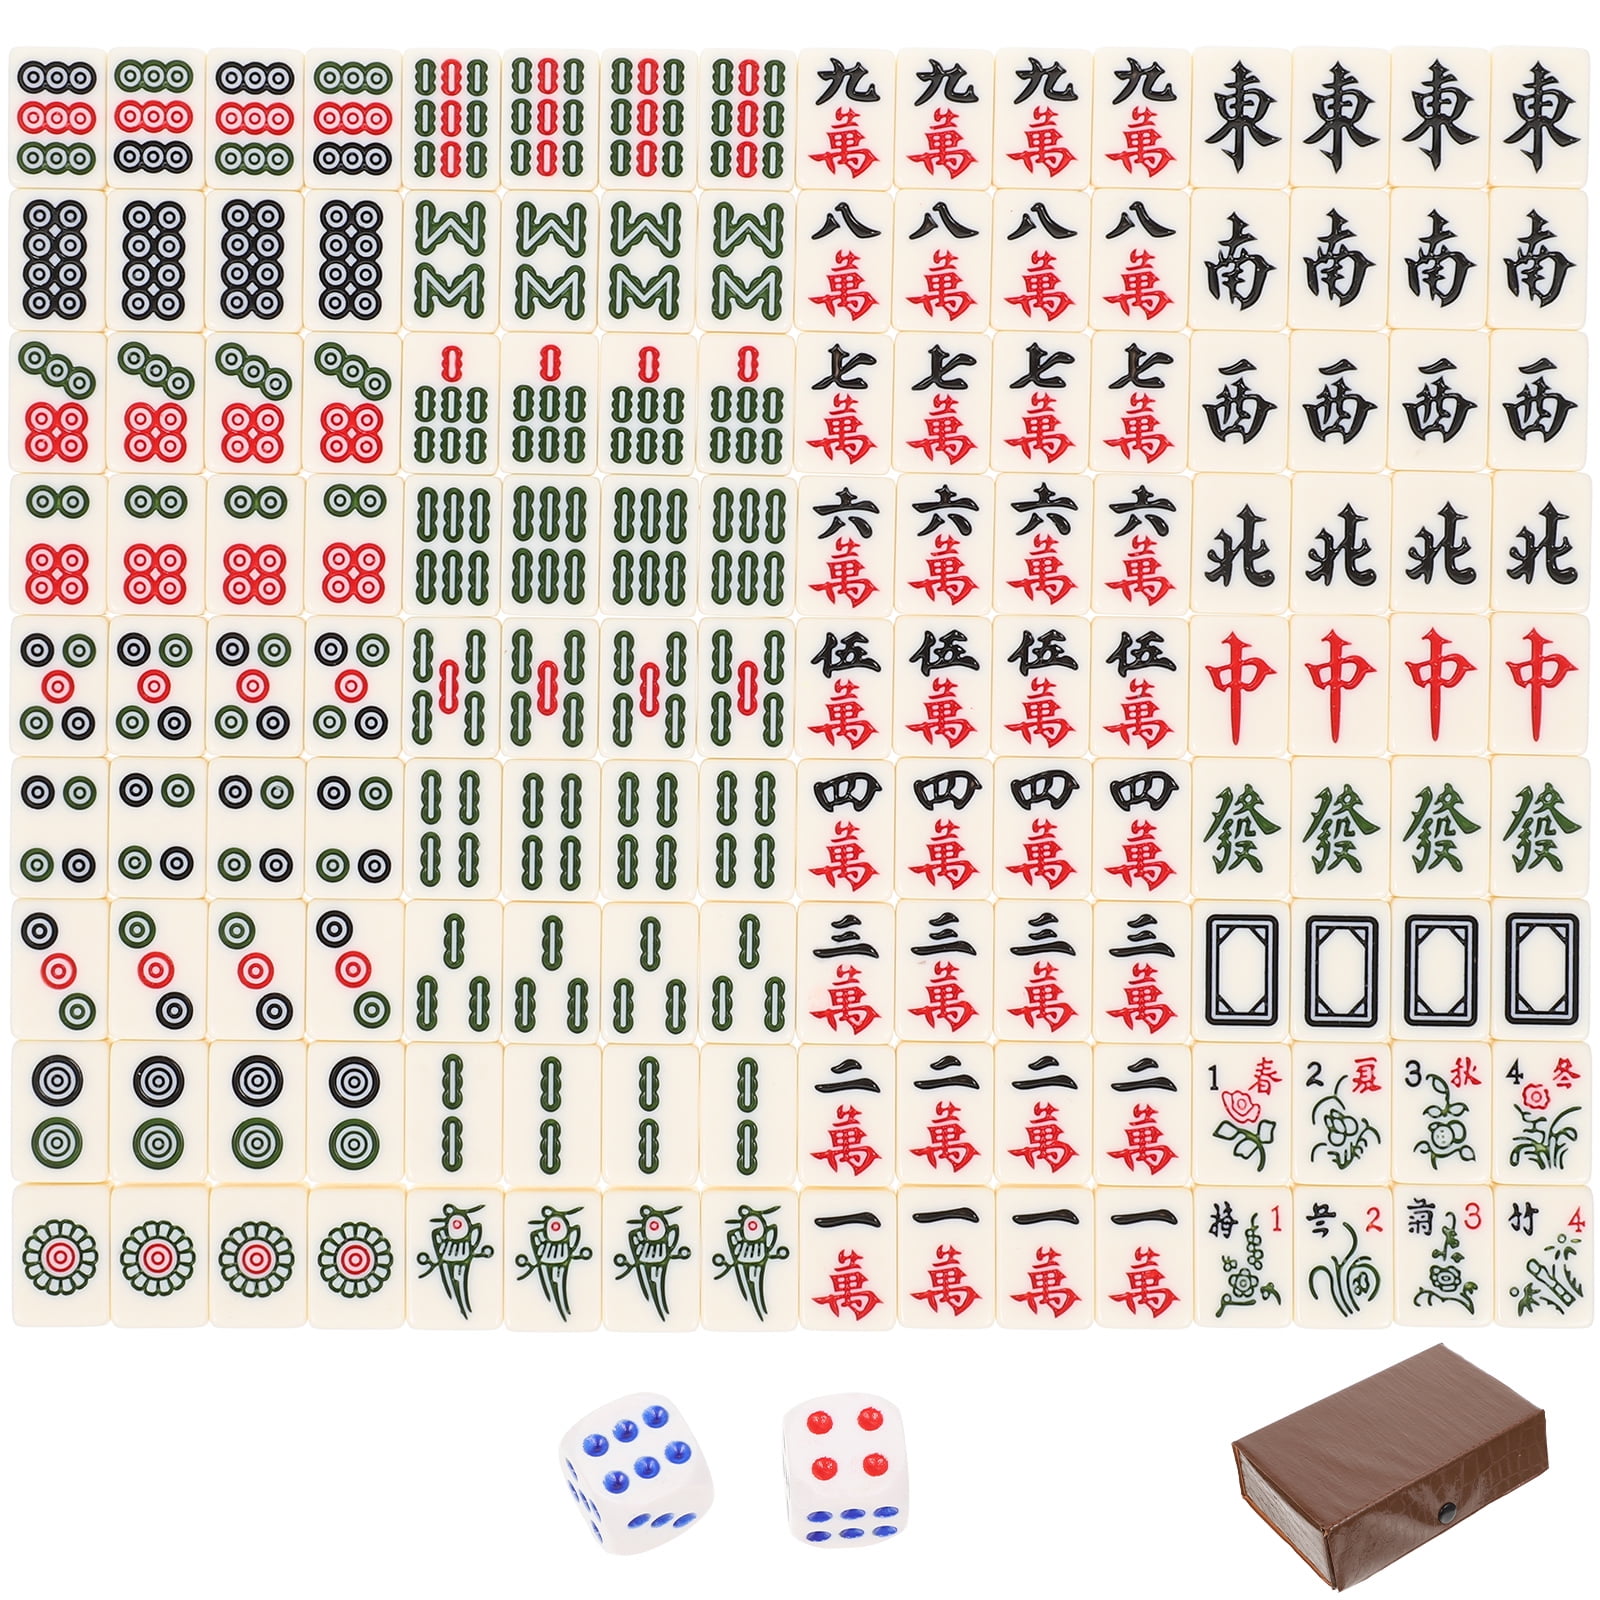 Mahjong Modelo de Mesa Mini Blocos de Construção Mah-jong Micro Tijolos Set  Board Game Cidade Construção Brinquedos Na Caixa